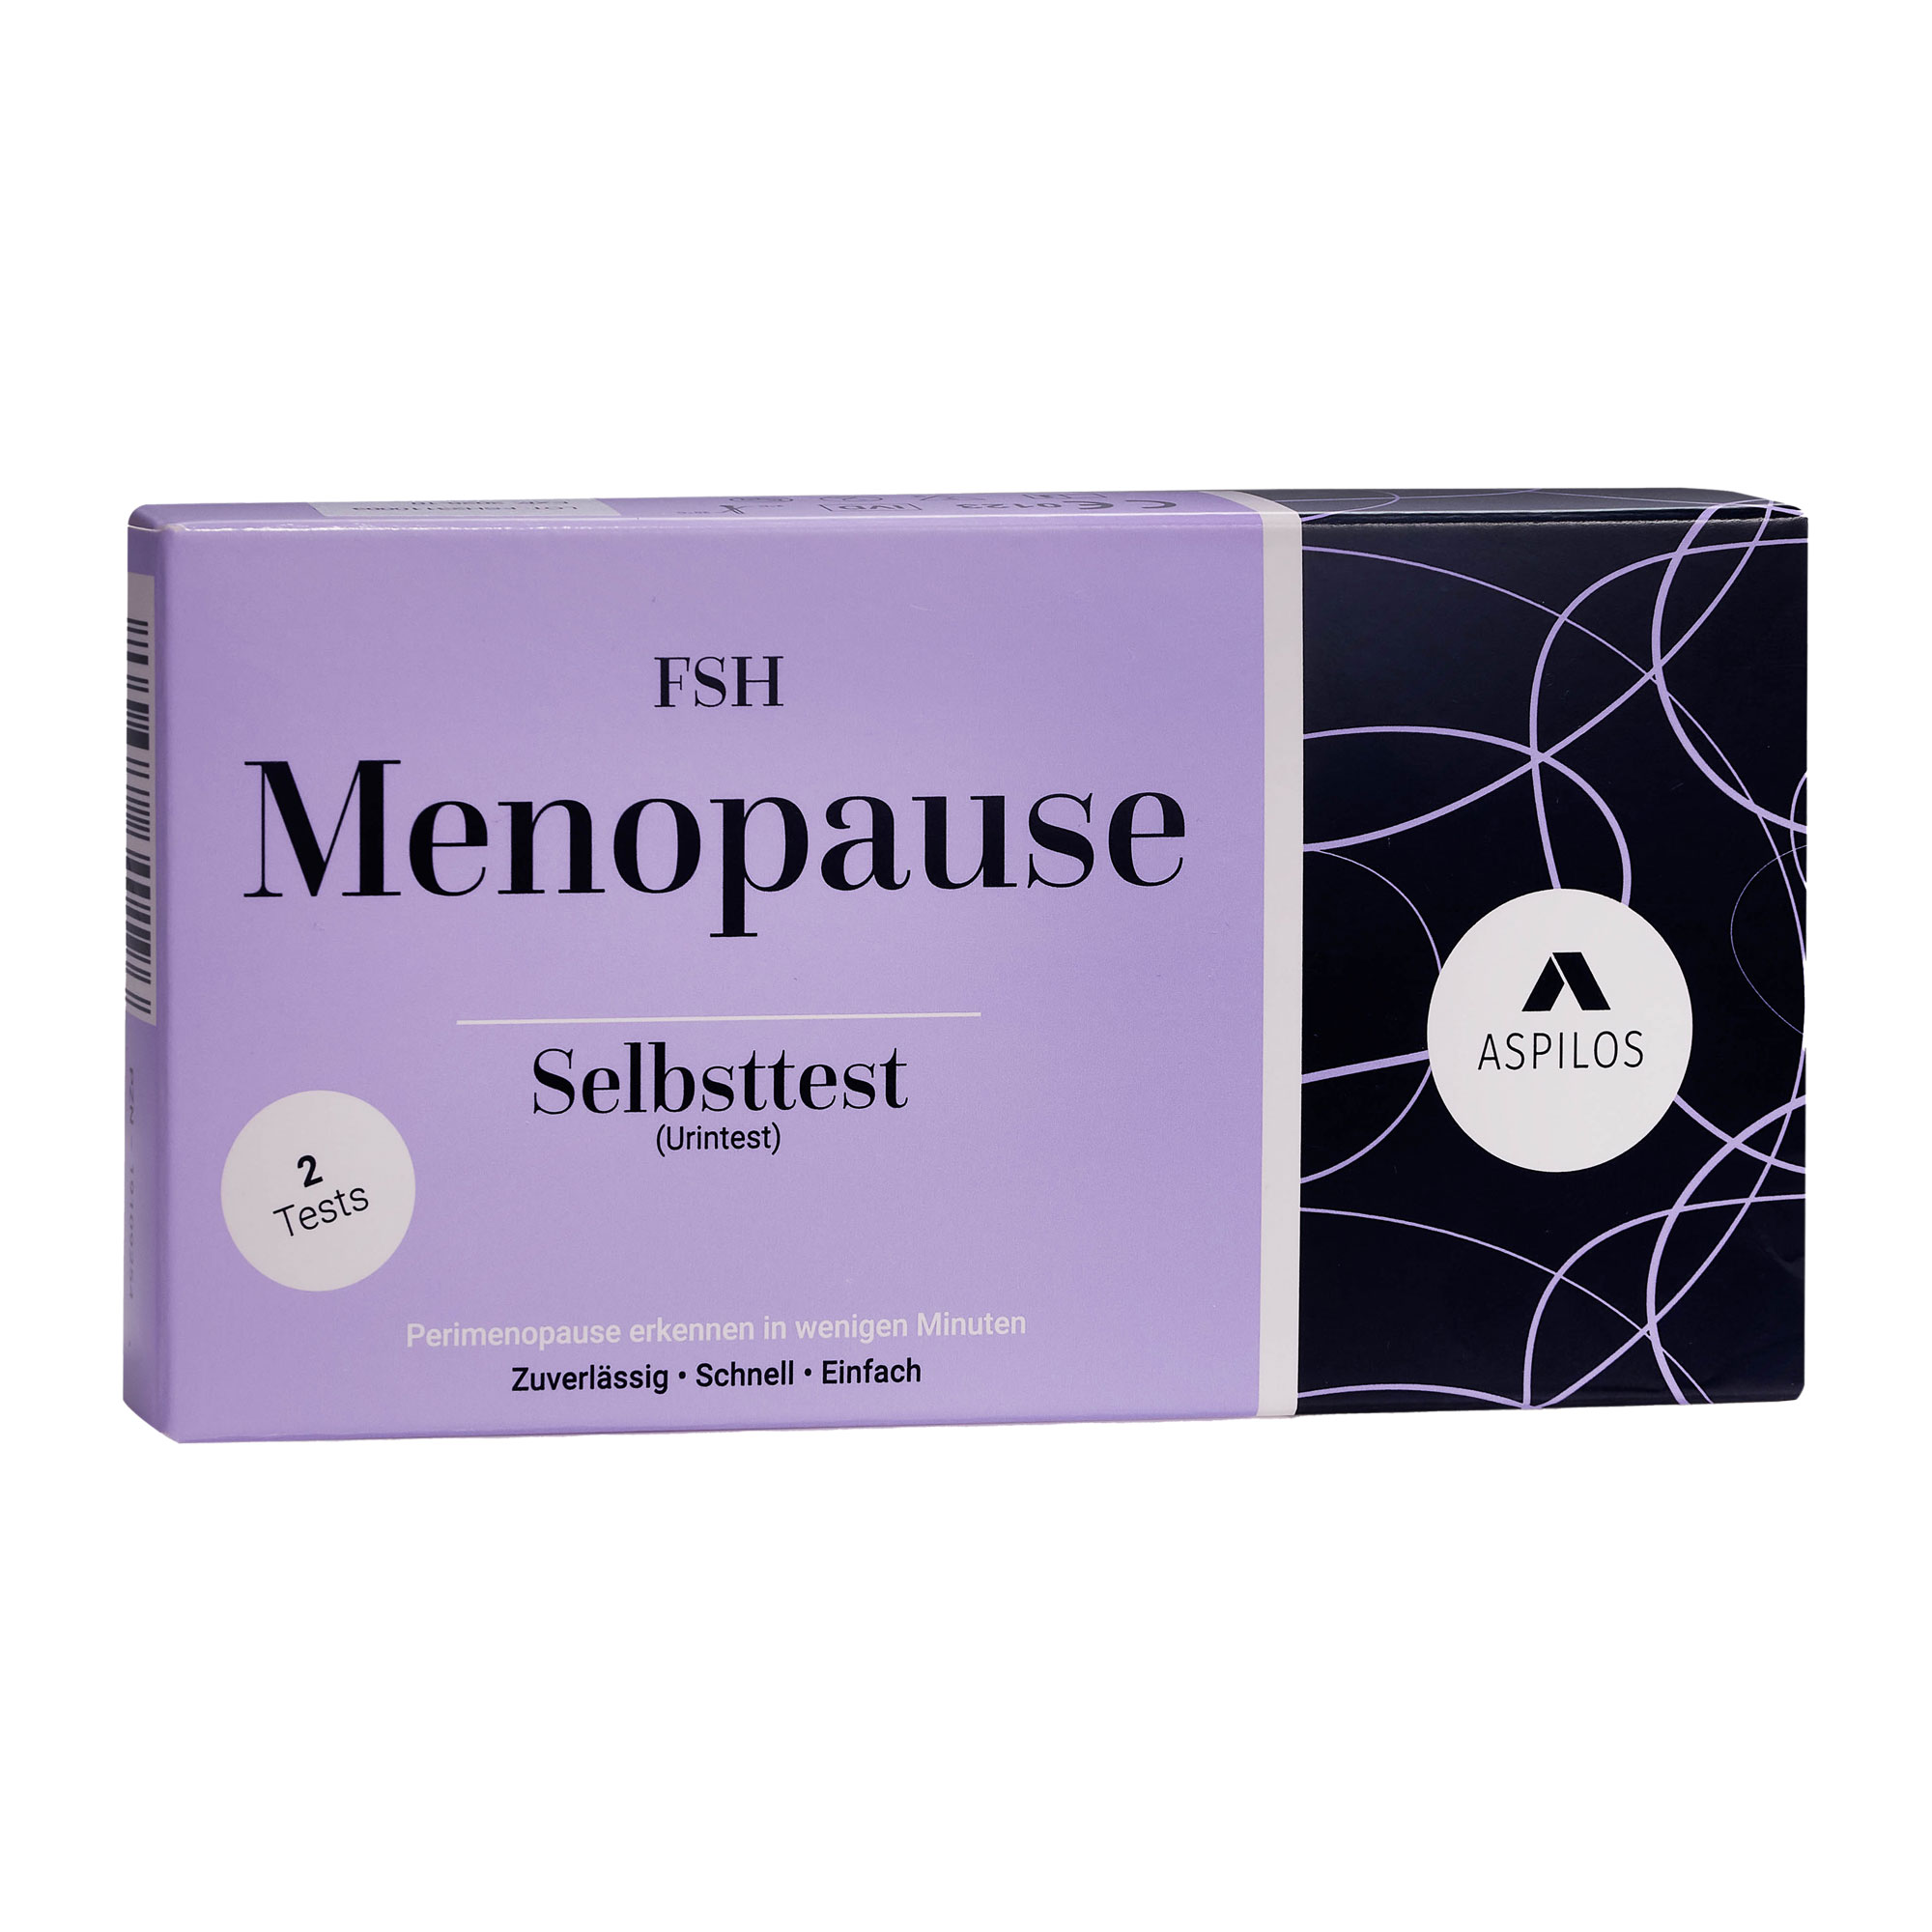 Schnelltest zur qualitativen Erfassung des follikelstimulierenden Hormons (FSH) im Urin zur Unterstützung bei der Erkennung der Menopause. Ergebnis innerhalb von 3 Minuten.